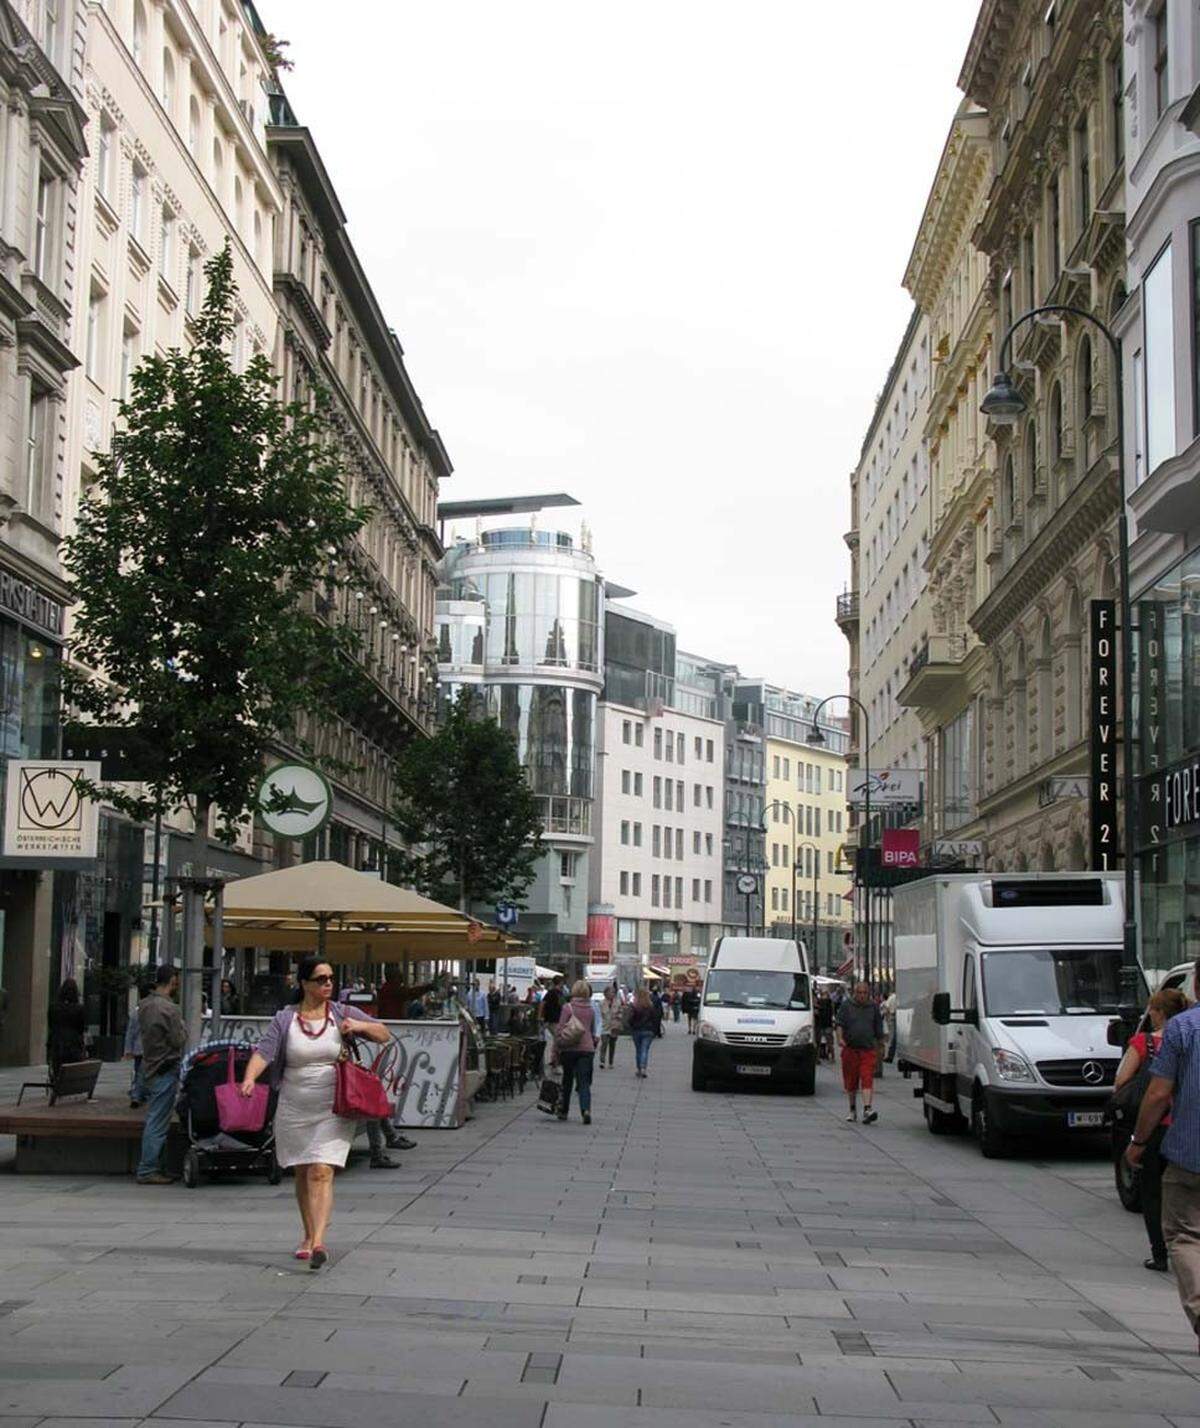 Auch nach der Umgestaltung im Jahr 2009 gilt die Kärntner Straße nach wie vor als bedeutendste Einkaufsmeile Wiens. Gemeinsam mit Kohlmarkt und Graben bildetet sie das sogenannte „Goldene U“ an traditionsreichen, innerstädtischen Einkaufsstraßen, in denen sich hauptsächlich Geschäfte teurer Preisklasse finden.